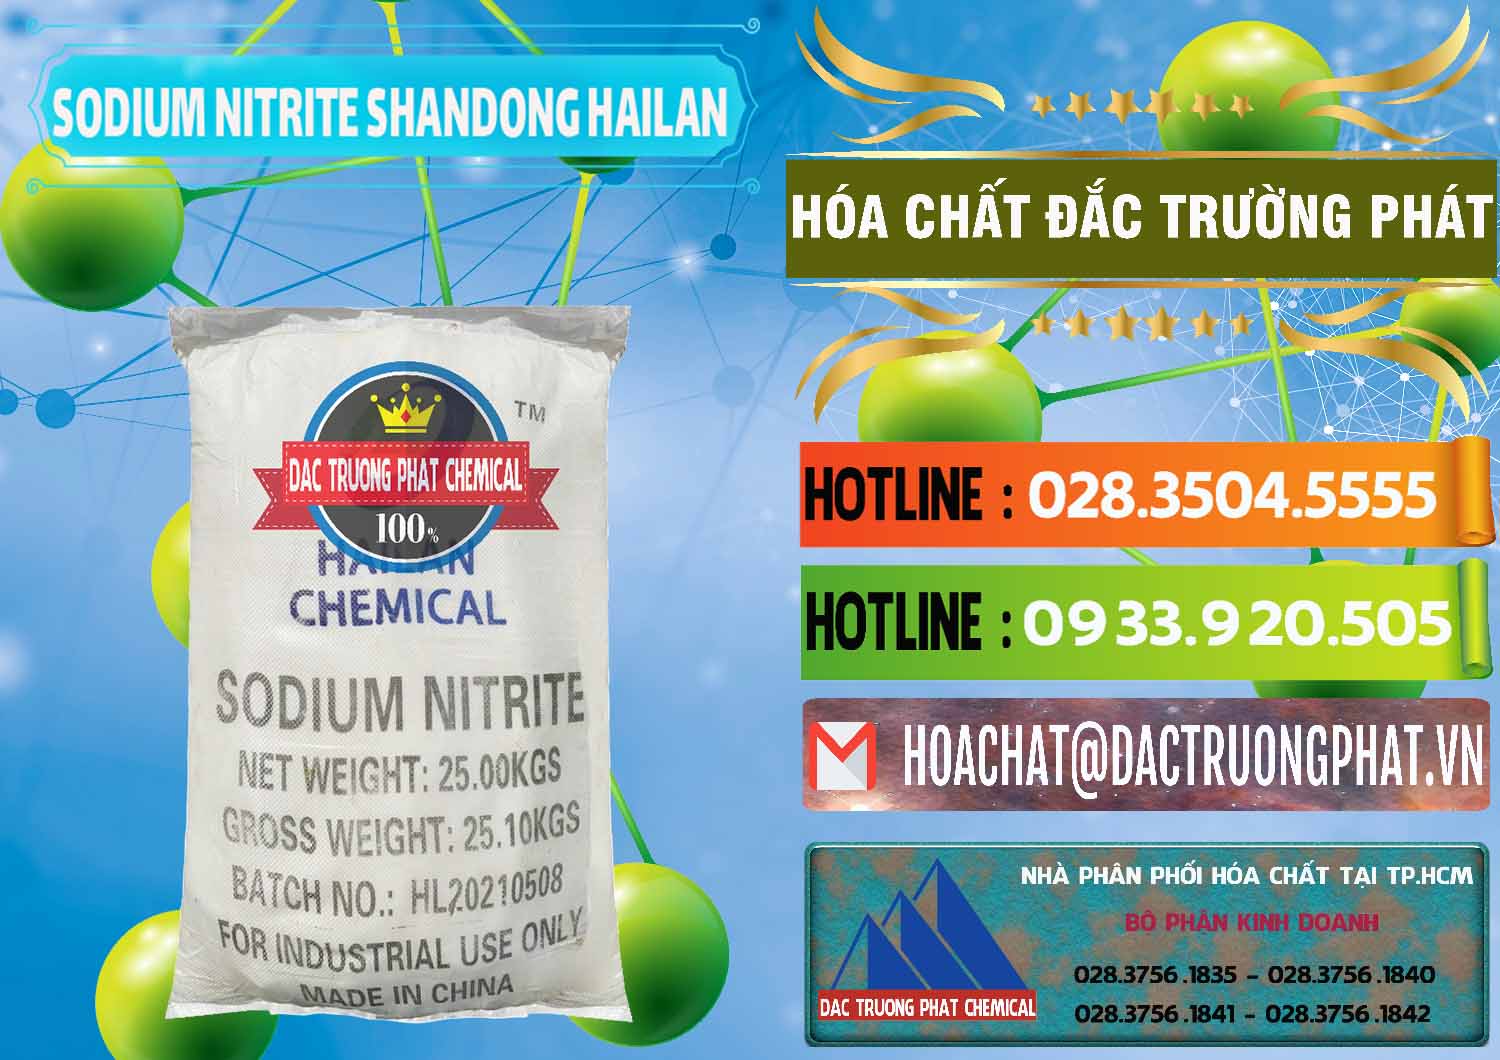 Cty nhập khẩu và bán Sodium Nitrite - NANO2 99.3% Shandong Hailan Trung Quốc China - 0284 - Chuyên phân phối và cung cấp hóa chất tại TP.HCM - cungcaphoachat.com.vn